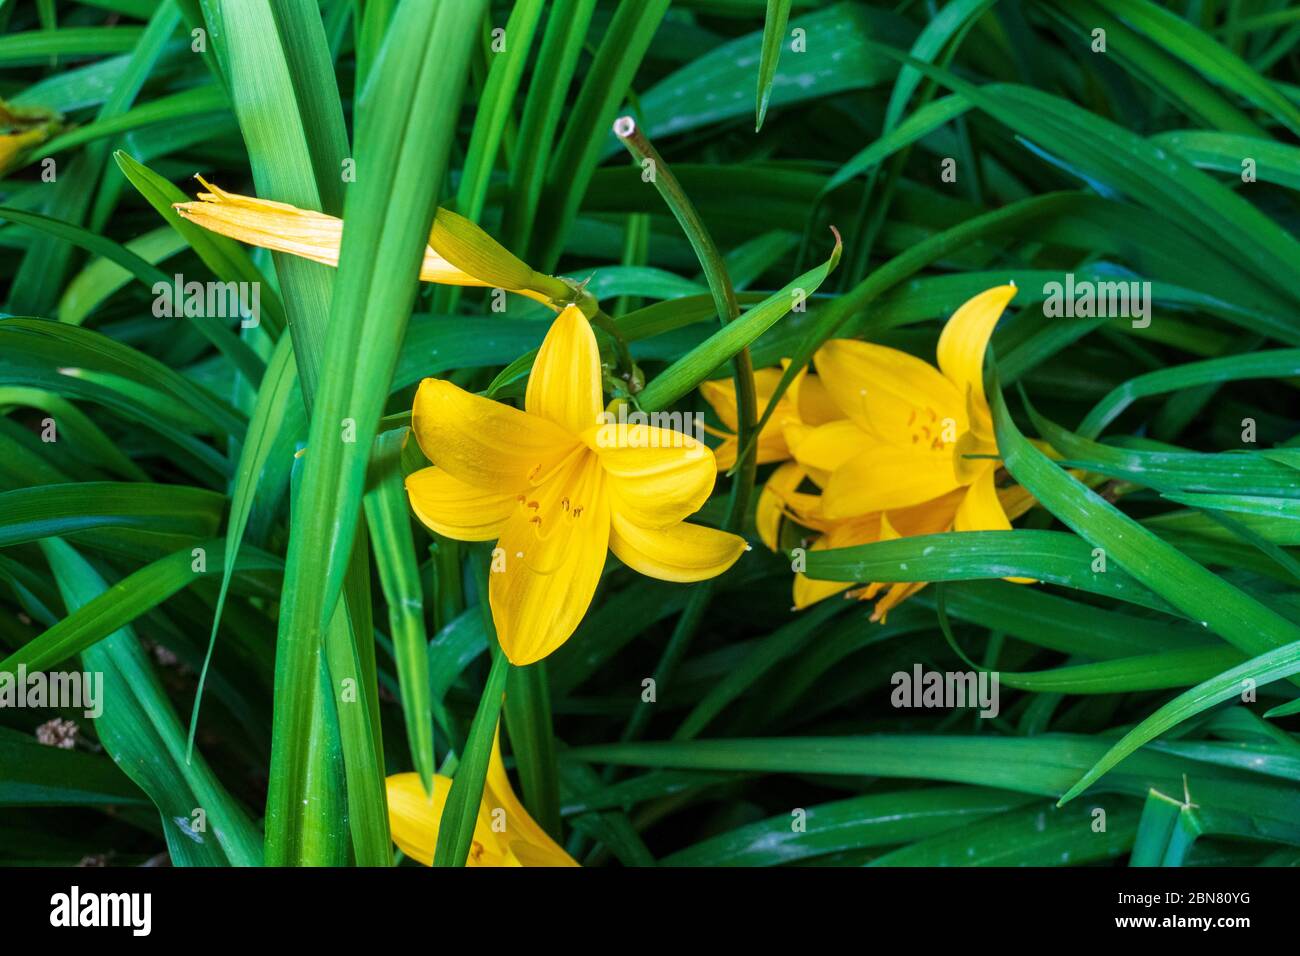 Asiatische gelbe Lilie mit Blatt Hintergrund Foto de stock